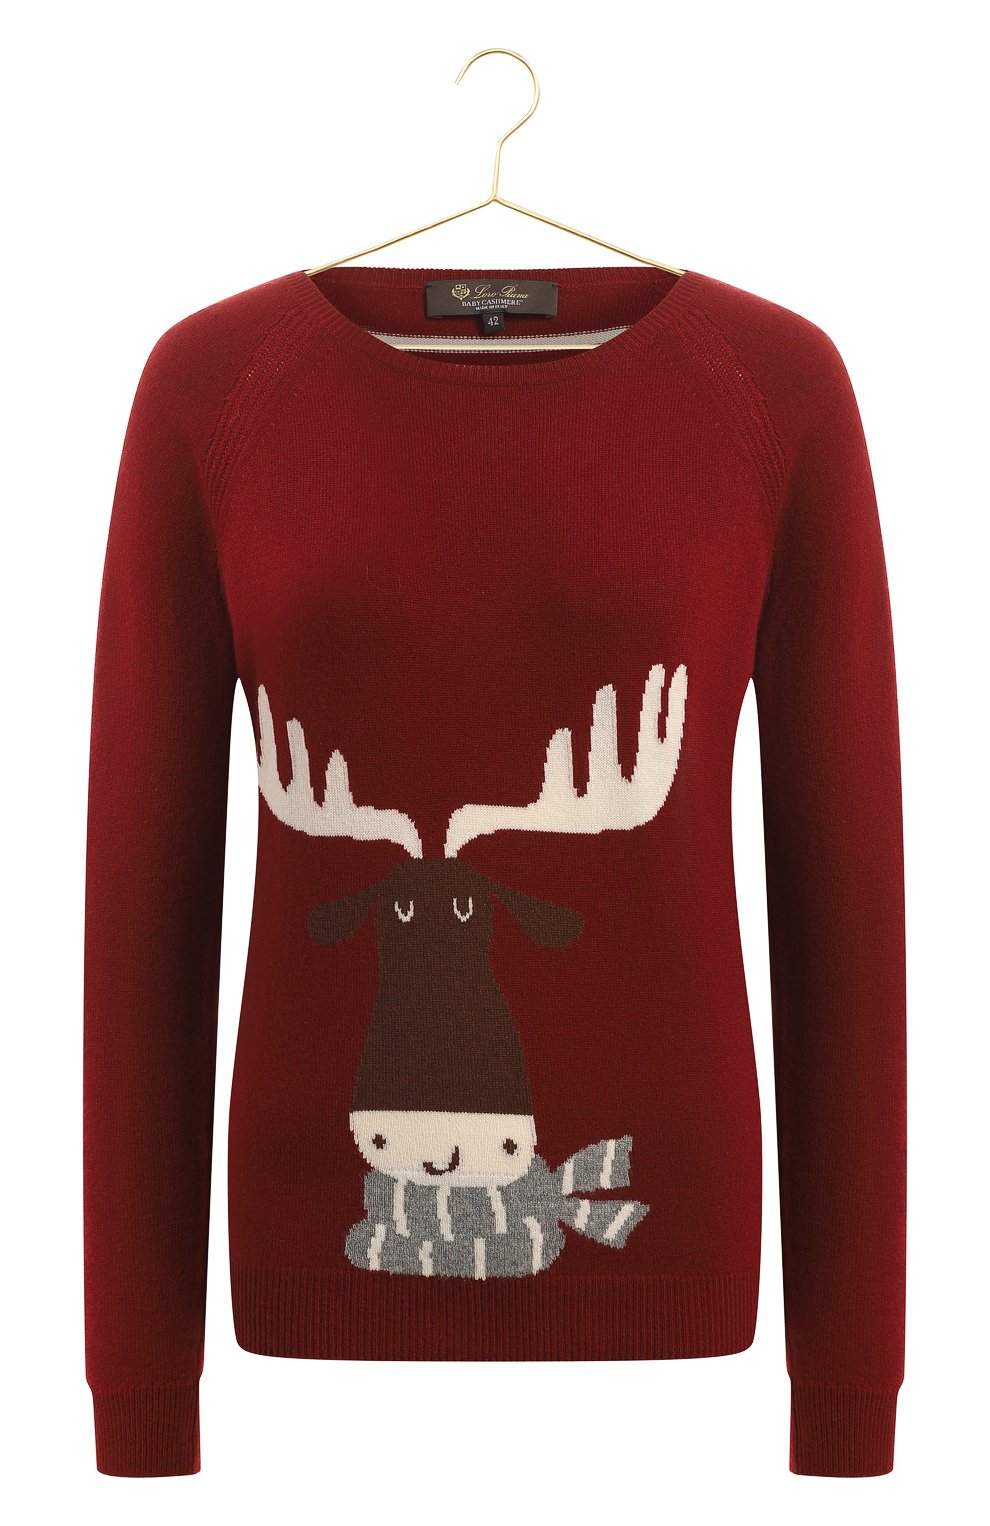 Кашемировый пуловер | Loro Piana | Красный - 1